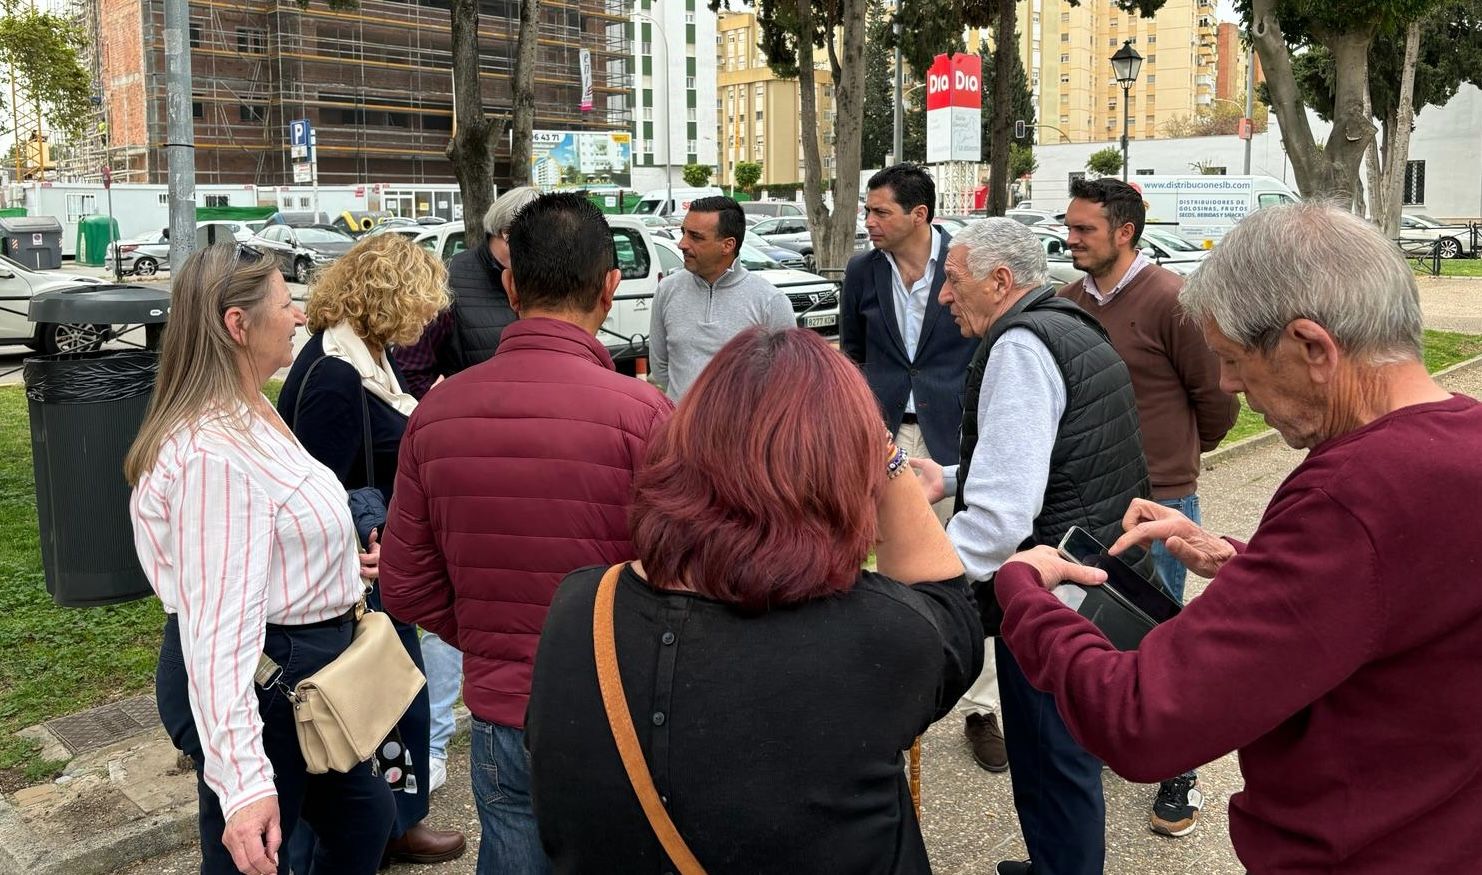 Las obras de la Asunción vuelven al Parlamento andaluz. Visita del parlamentario y concejales del PSOE a la barriada.